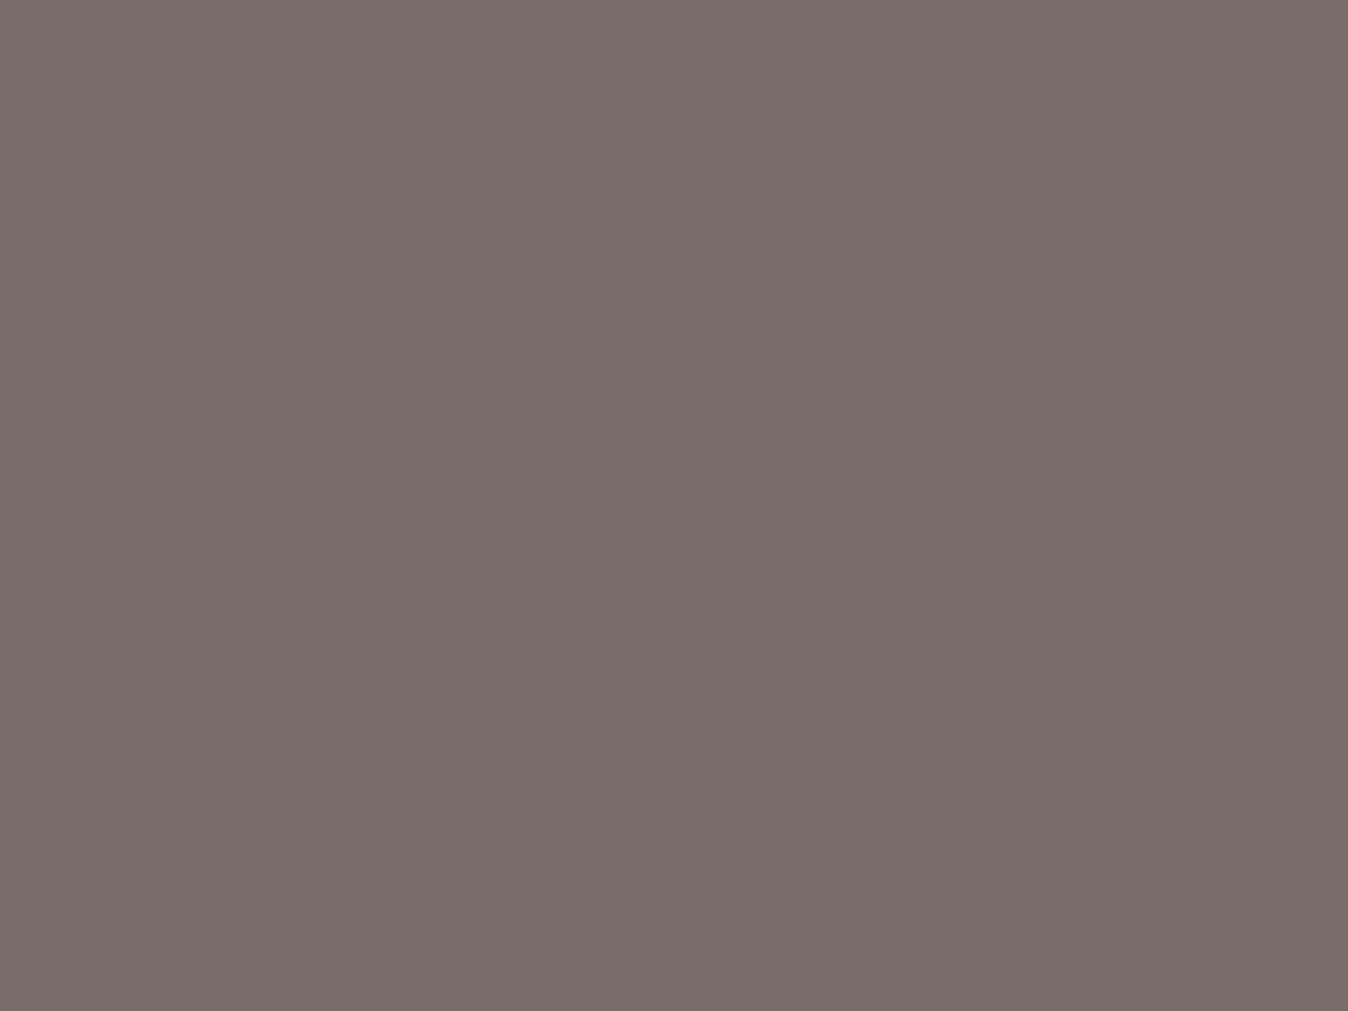 Арнольд Беклин. Битва кентавров (фрагмент). 1873. Базельский художественный музей, Базель, Швейцария